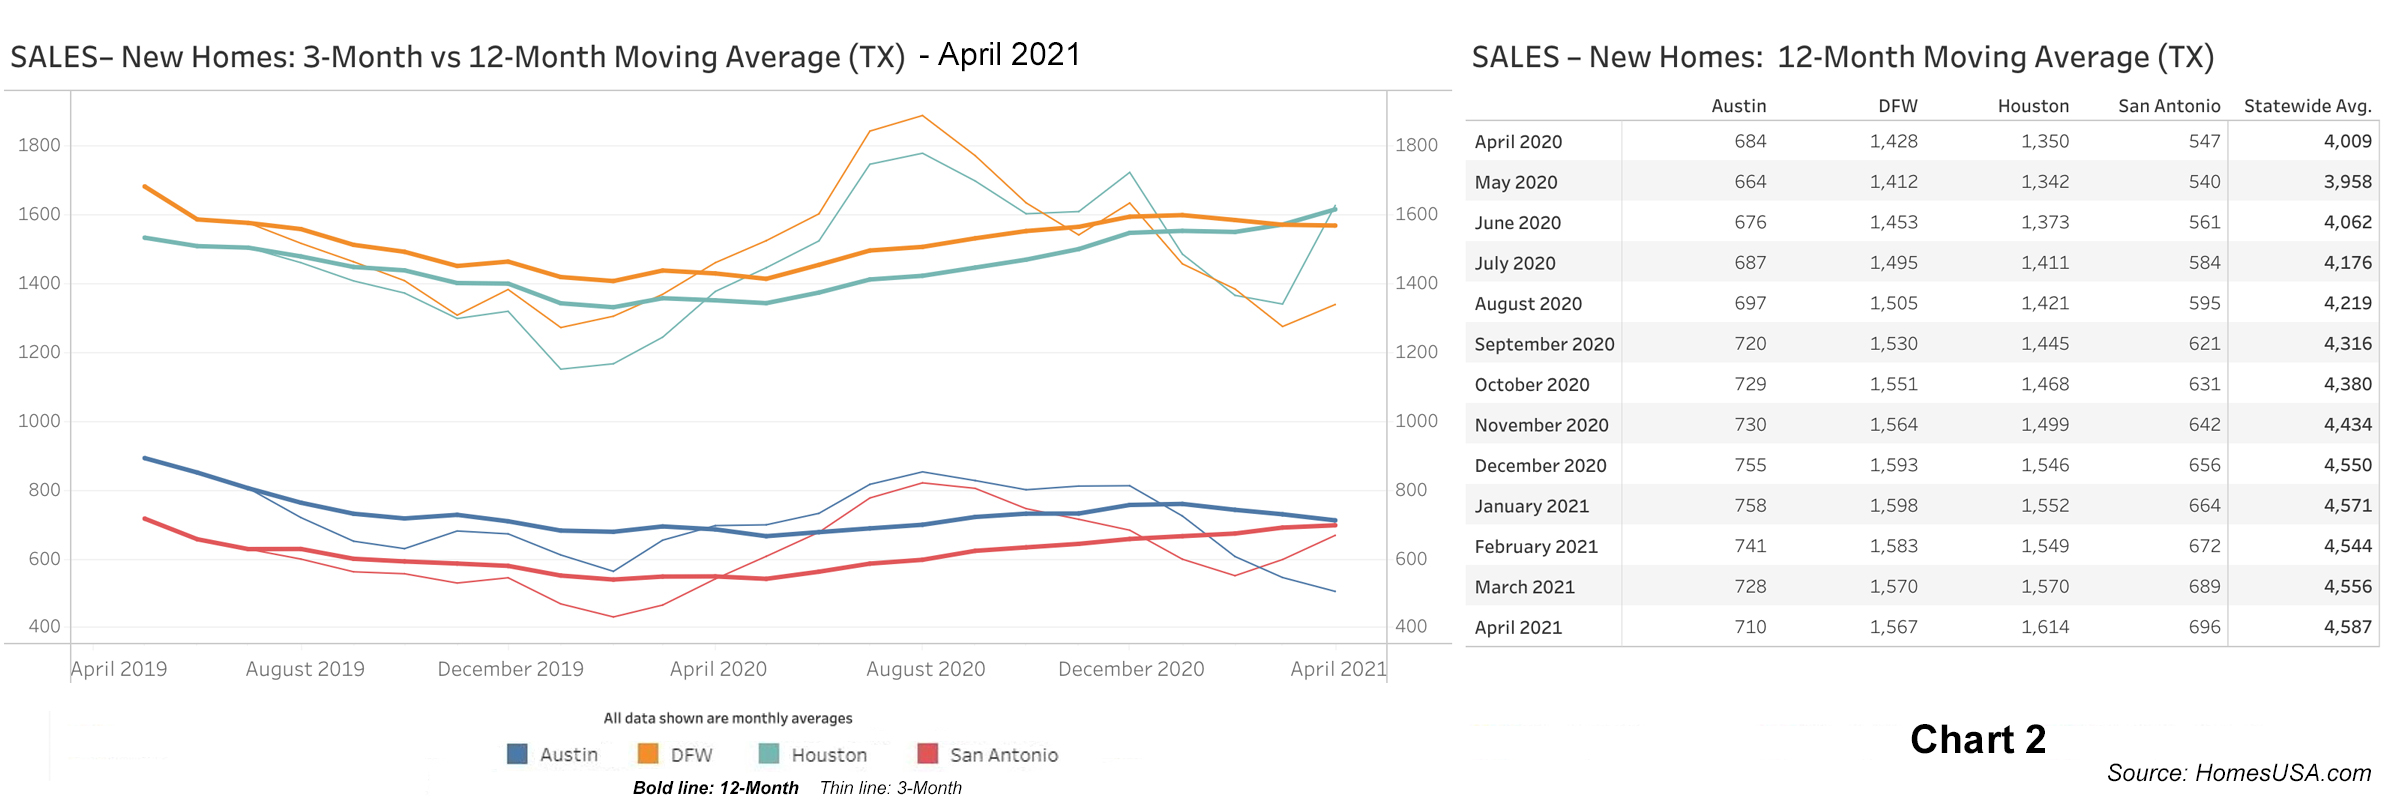 Chart 2: Texas New Home Sales - April 2021